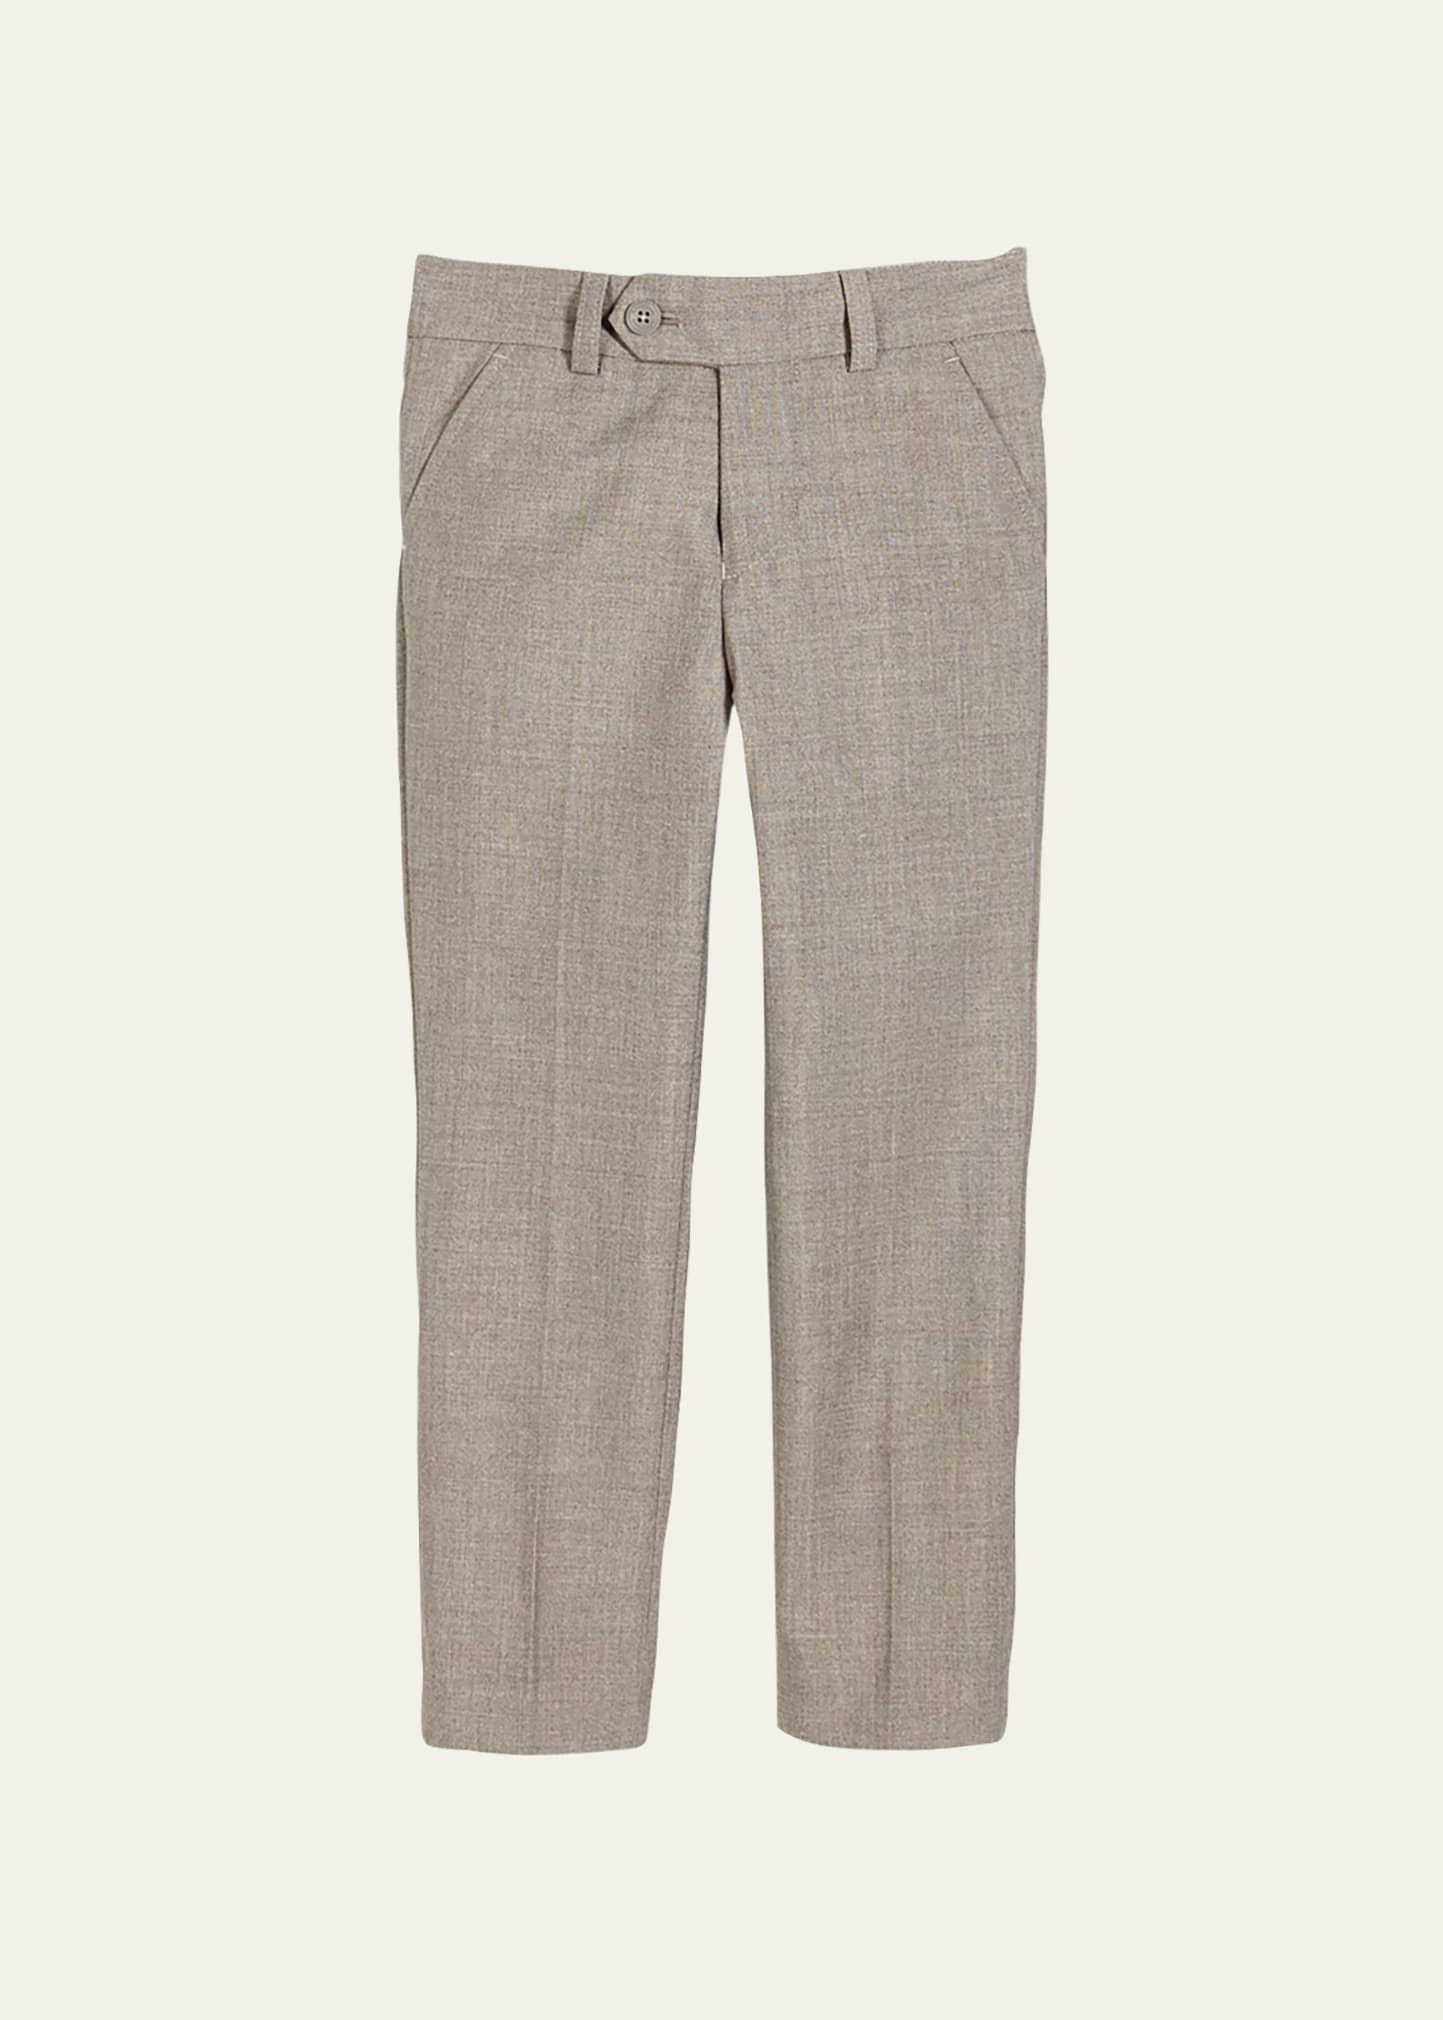 Slim Suit Pants, Light Gray, Size 2-14